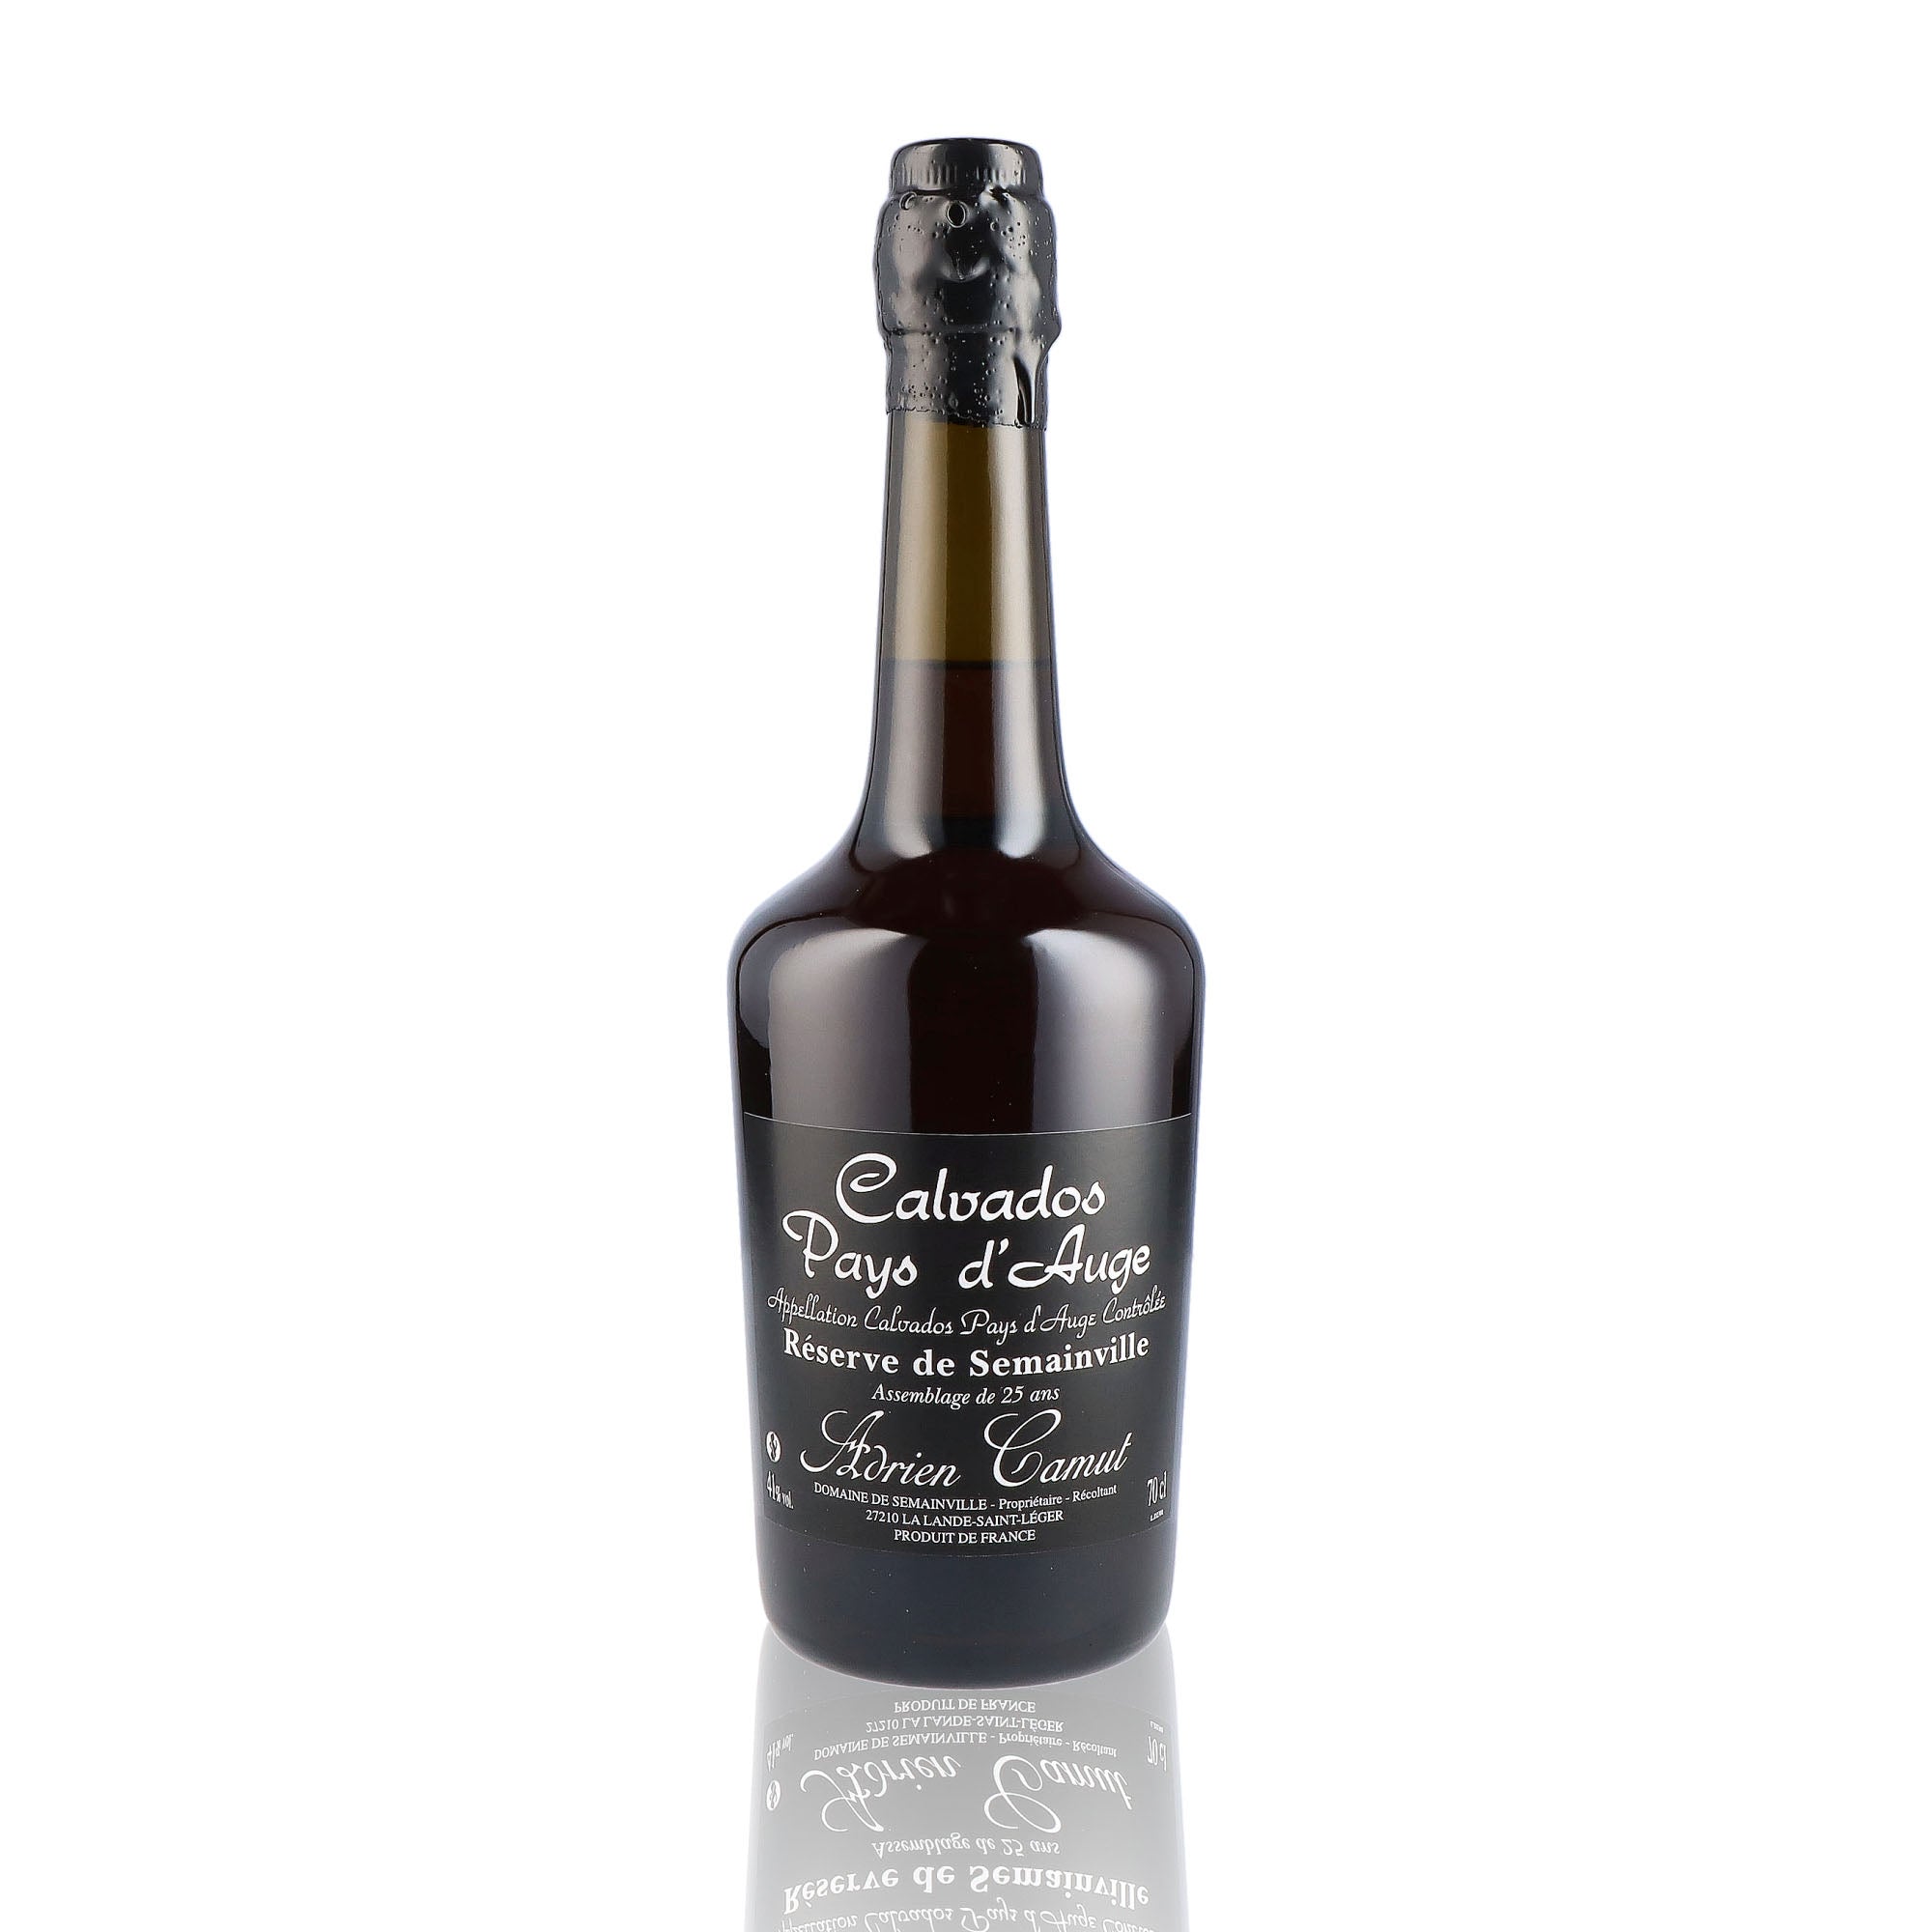 Une bouteille de Calvados, de la marque Adrien Camut, 6 ans d'âge. 